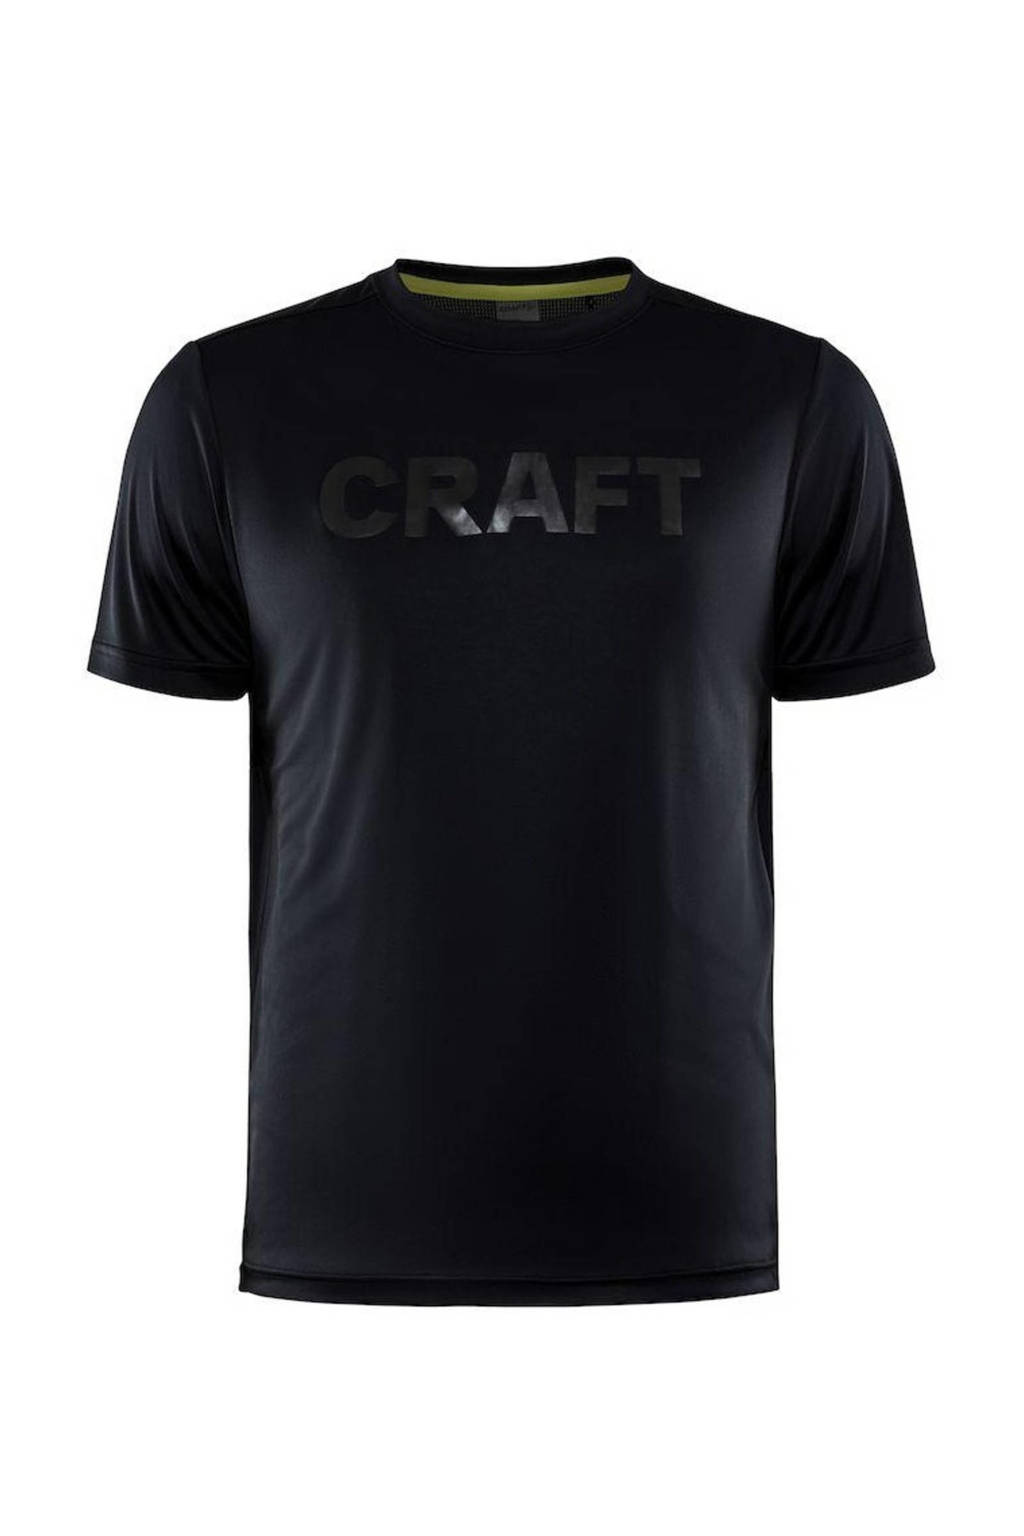 Zwarte heren Craft sport T-shirt Core Charge van polyester met logo dessin, korte mouwen en ronde hals